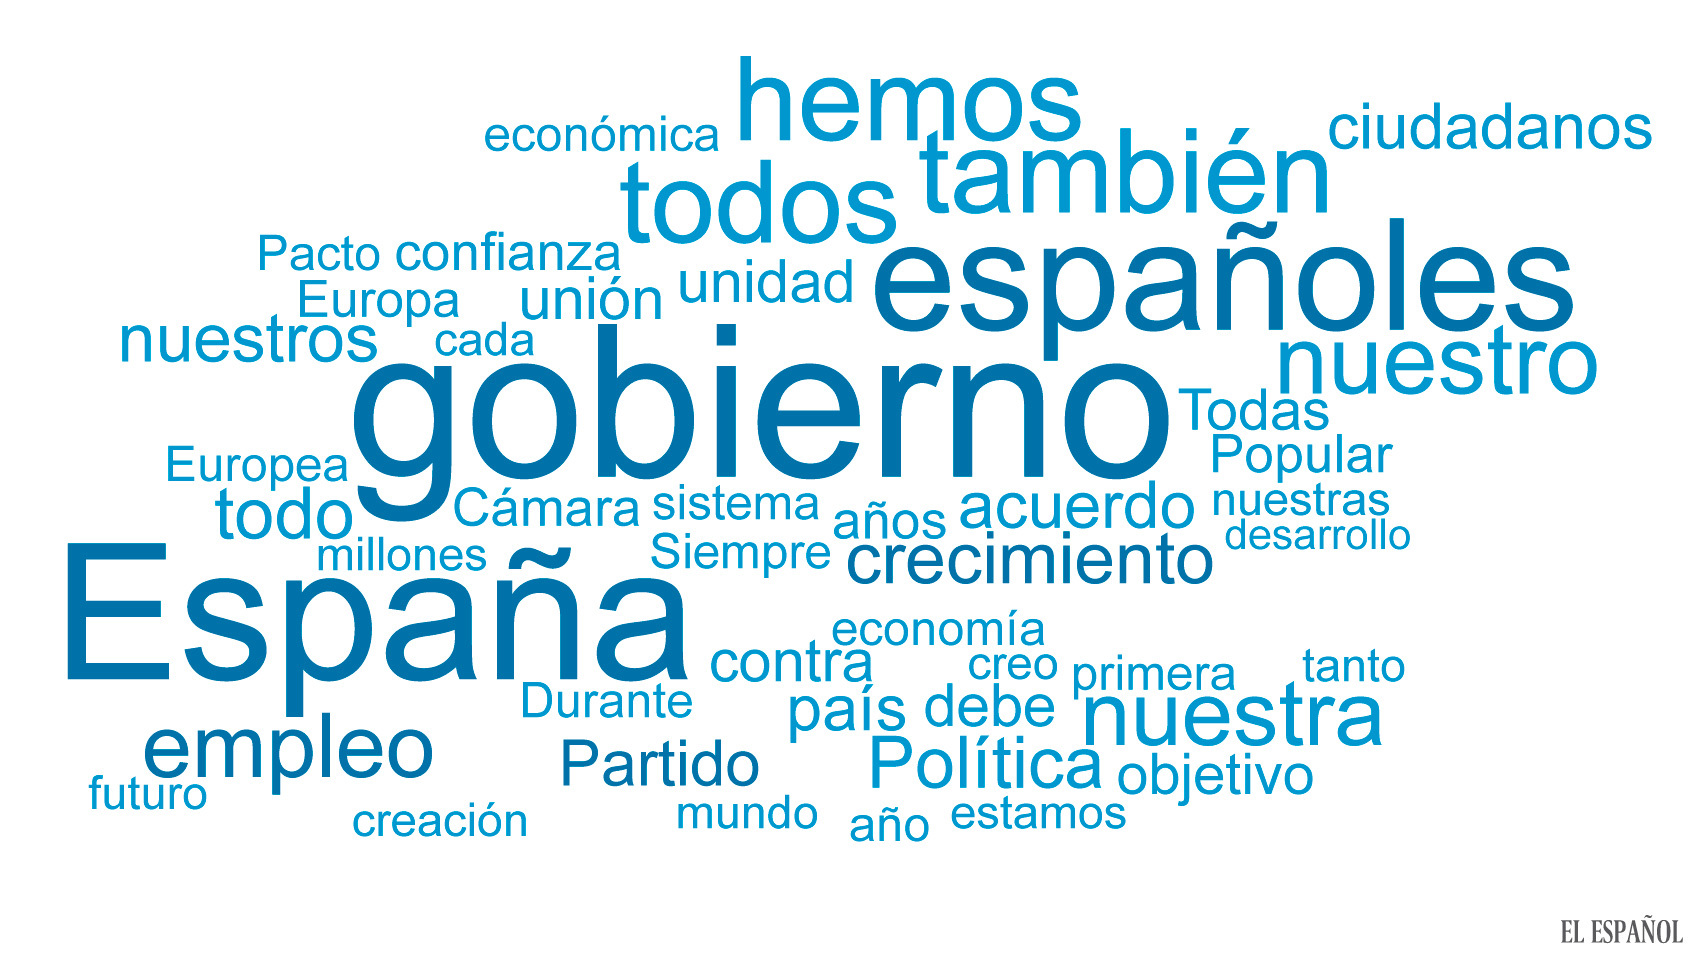 Las palabras que ha utilizado Rajoy: 80 veces 'gobierno', tan sólo una 'regeneración'